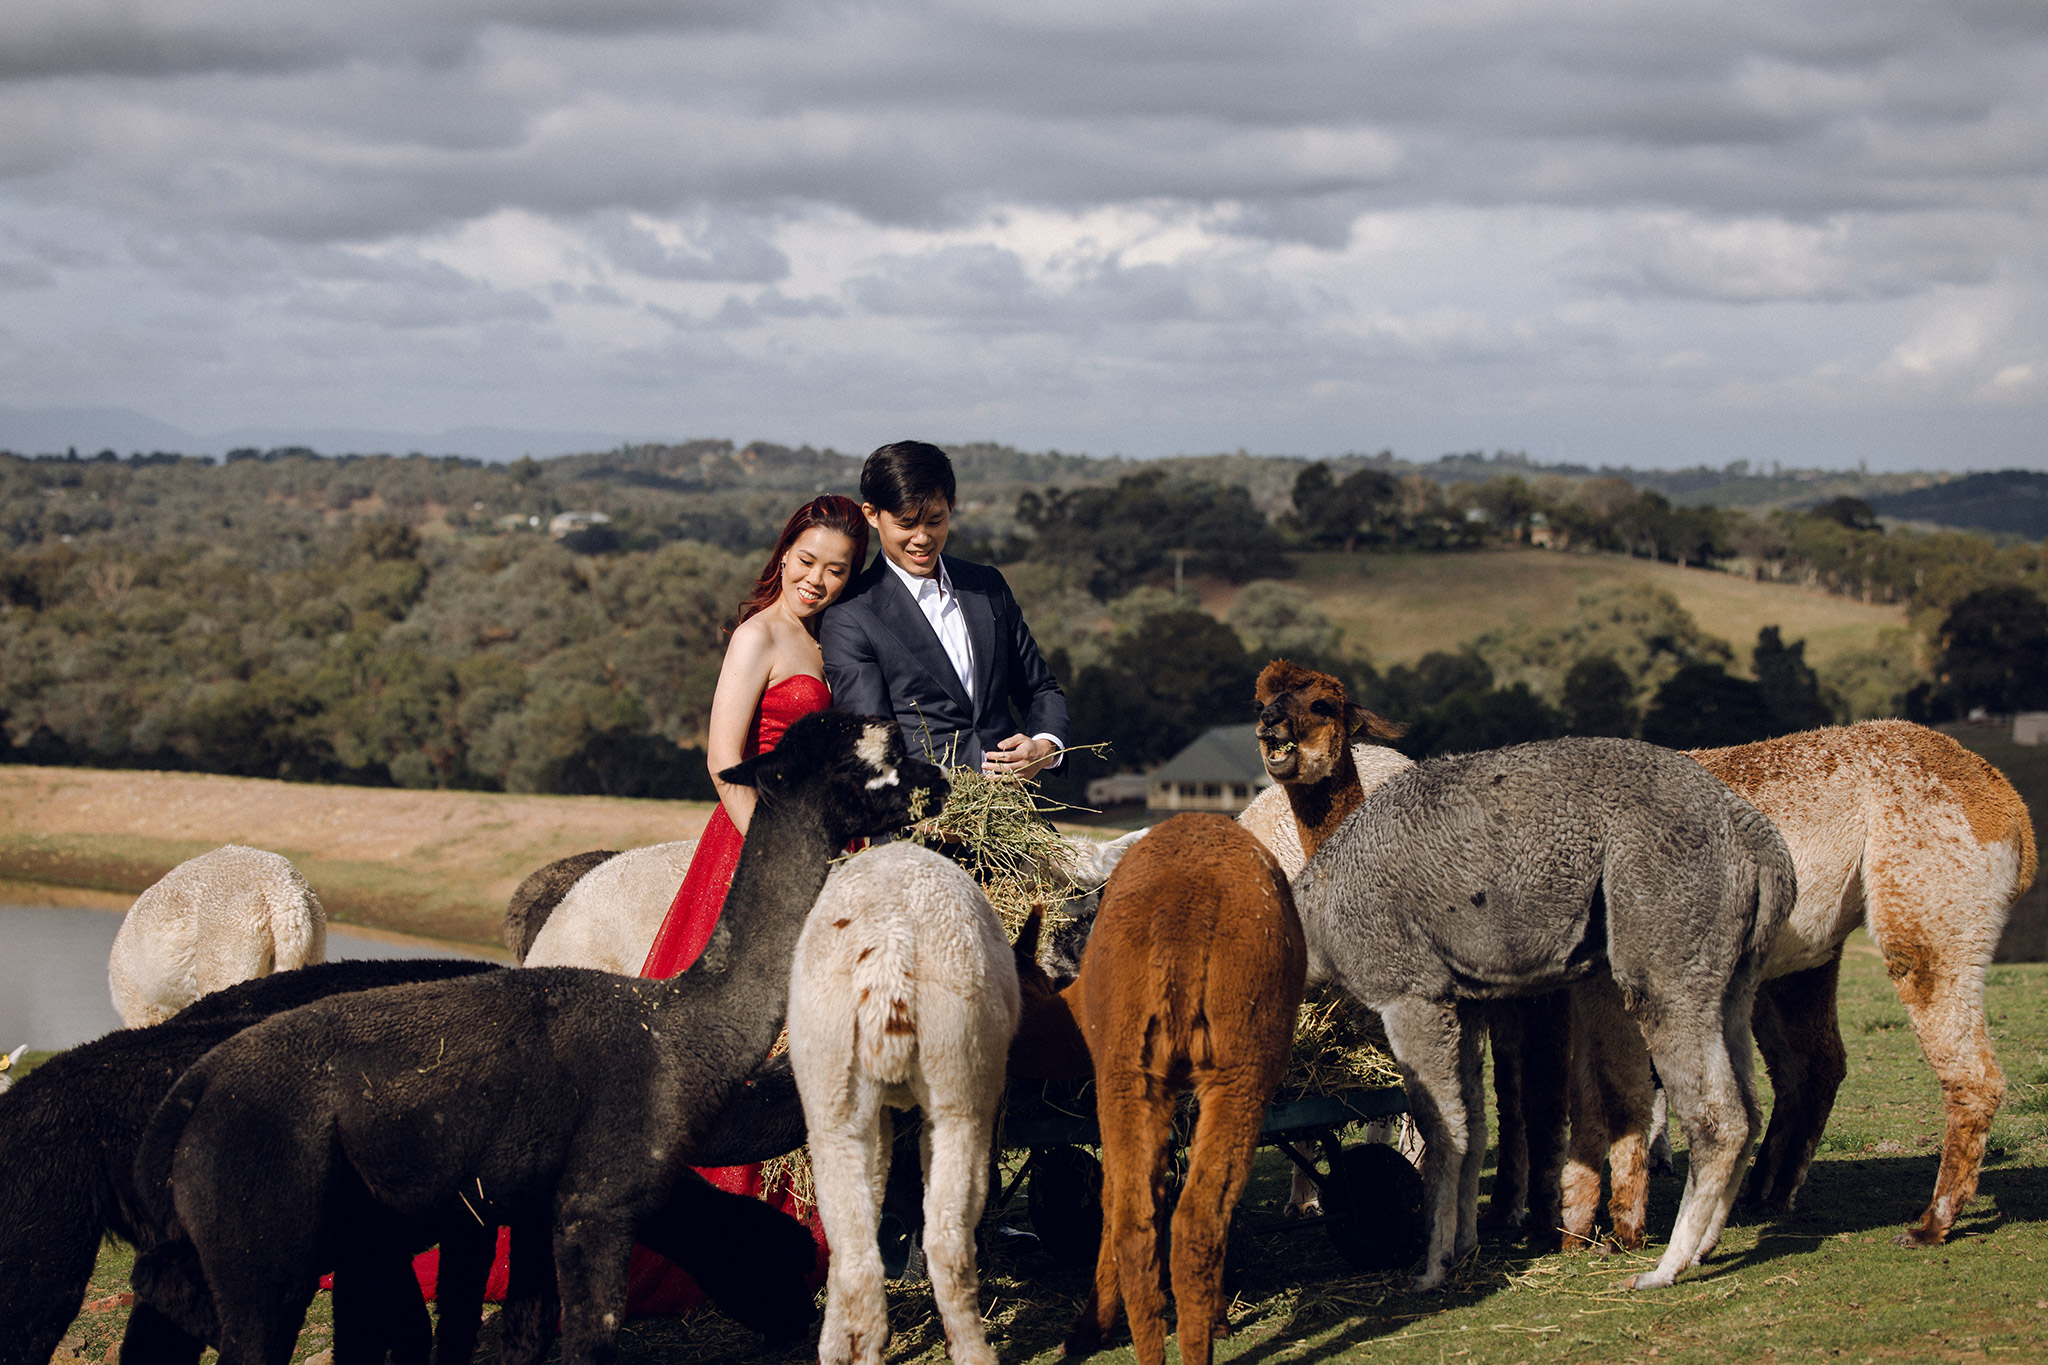 Melbourne Pre-Wedding Photoshoot at Alpaca Farm, Carlton Gardens & Brighton Beach by Freddie on OneThreeOneFour 2